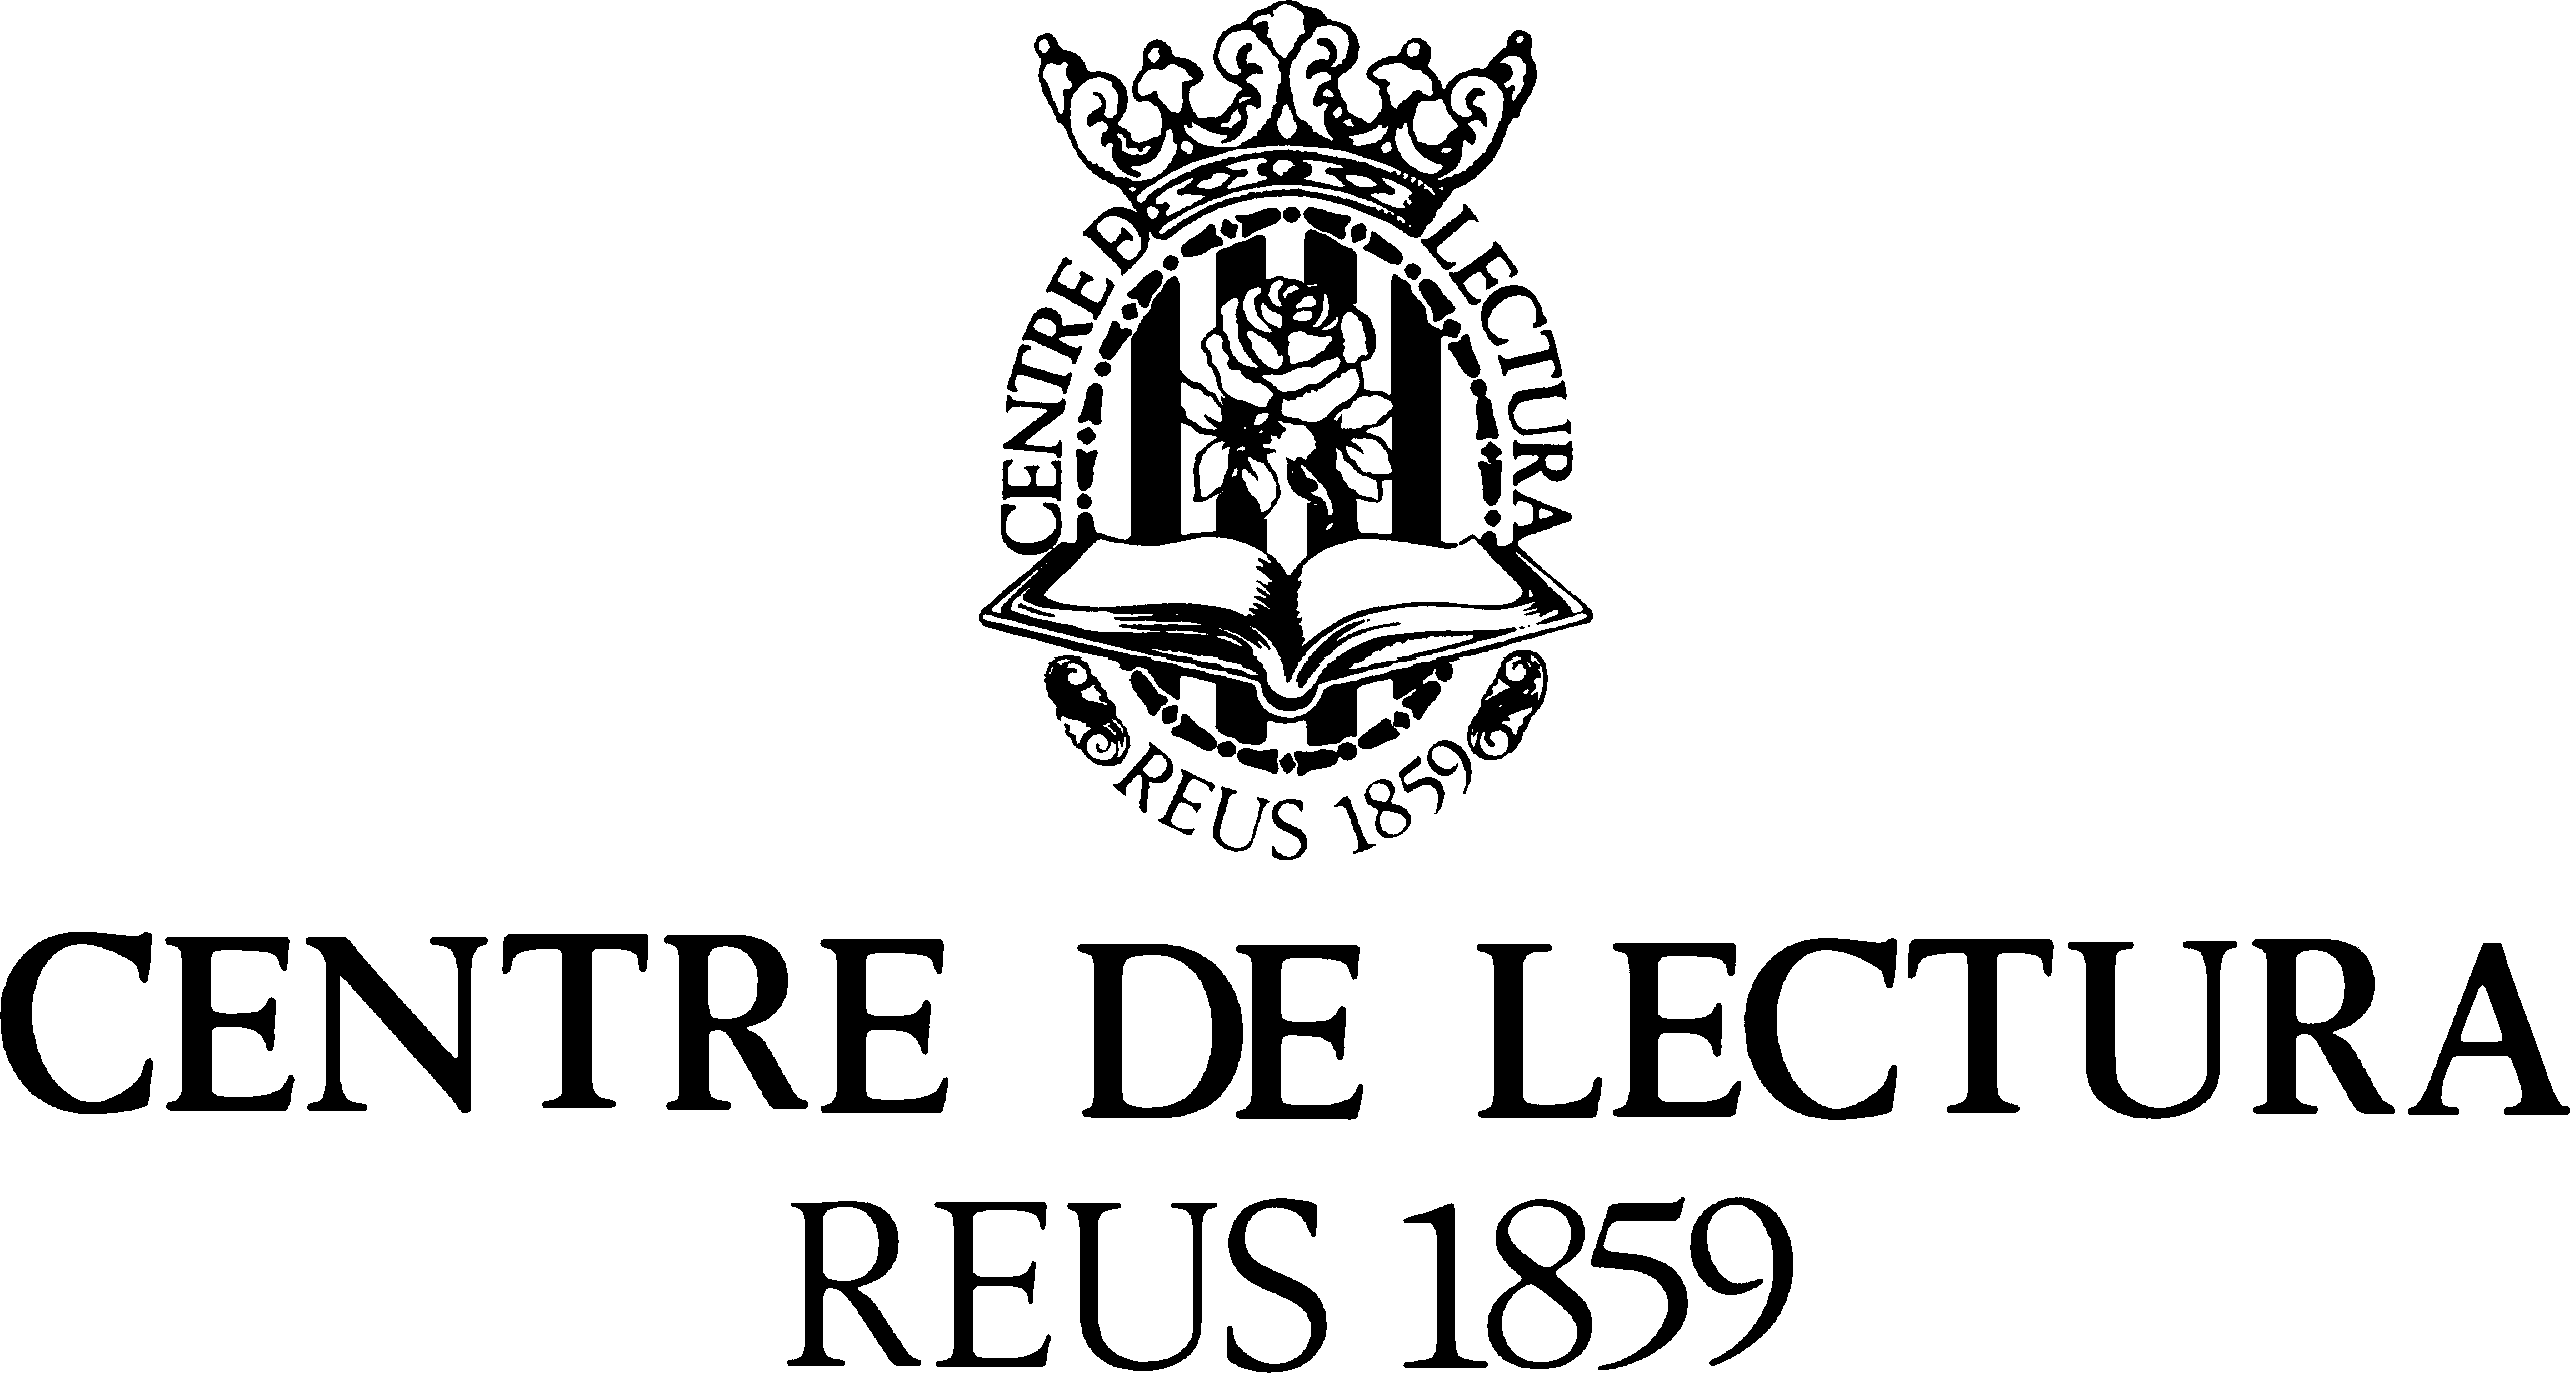 150 anys de cultura a Reus